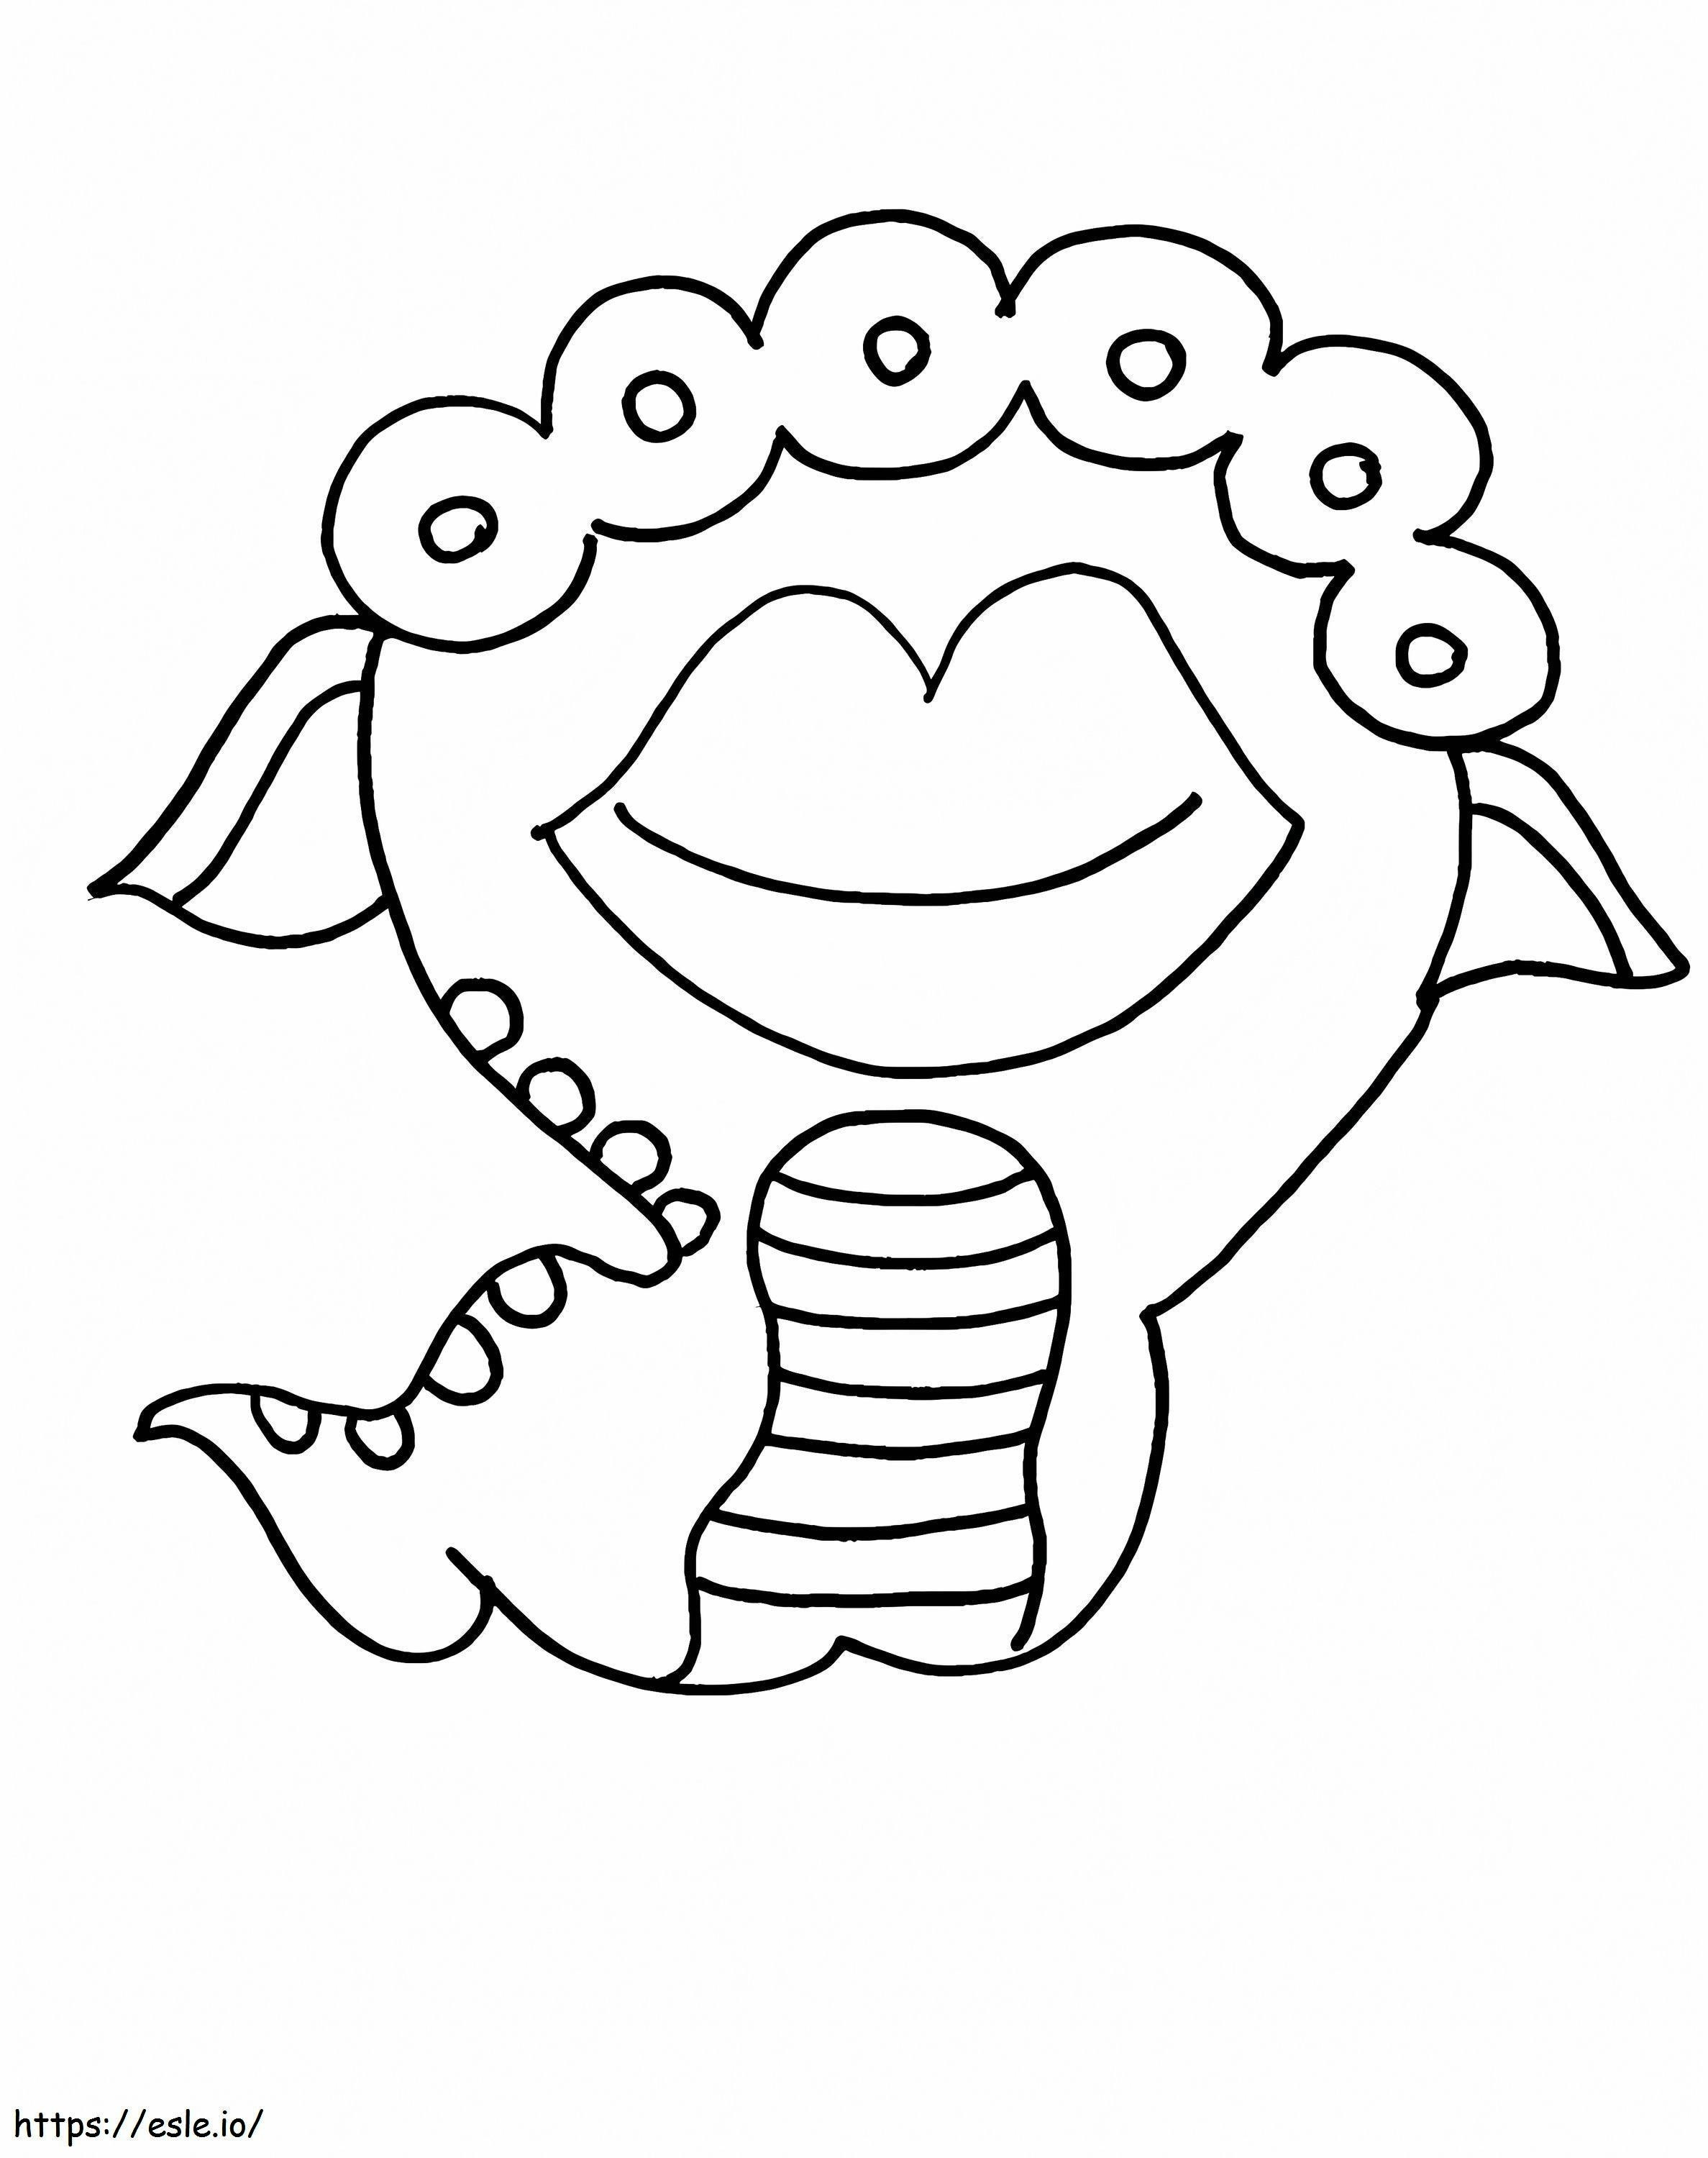 1545011425 Monster Lembaran Aneh Truk Gratis Untuk Anak-anak Prasekolah Yugioh Tinggi Halloween Laut Dapat Dicetak Dewasa Hijau Besar Lucu Truk Prasekolah Menakutkan River Cookie Inc 1 Gambar Mewarnai